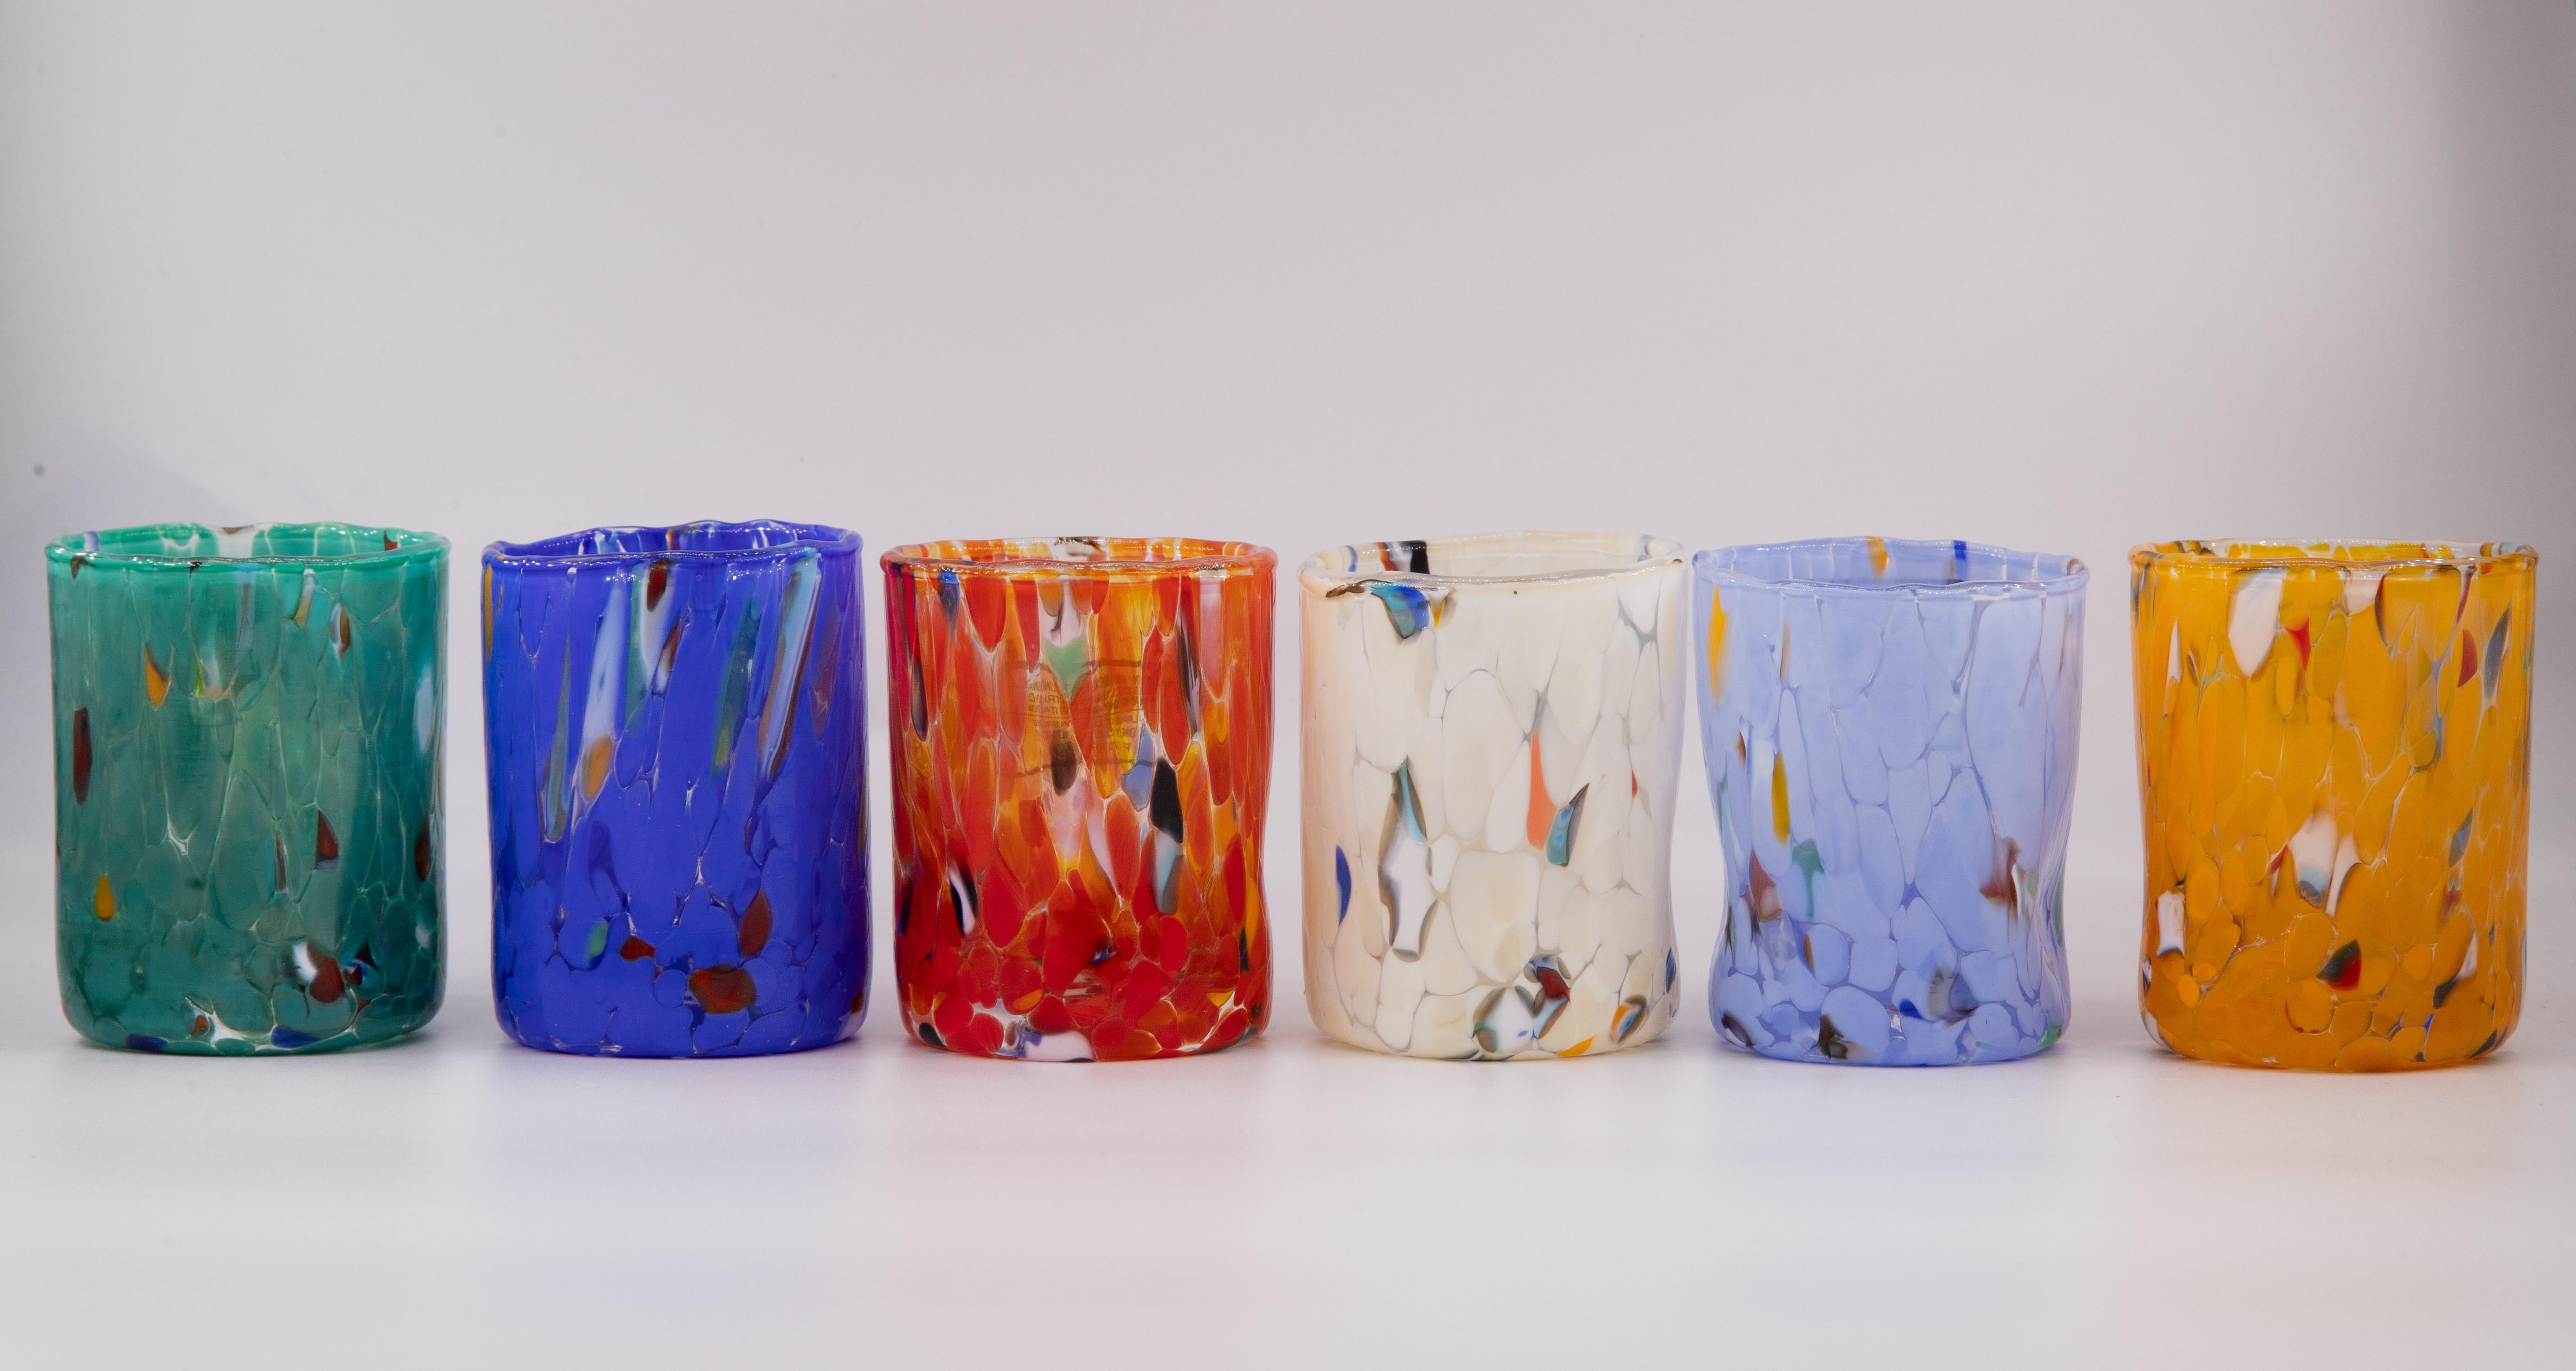 Set von sechs Shot\café Gläser Farbe Multicolor (petrol grün, blau, rot, elfenbein, periwinkle, Senf) - Murano Glas - Made in Italy.

Diese individuellen Murano-Gläser sind vom klassischen 